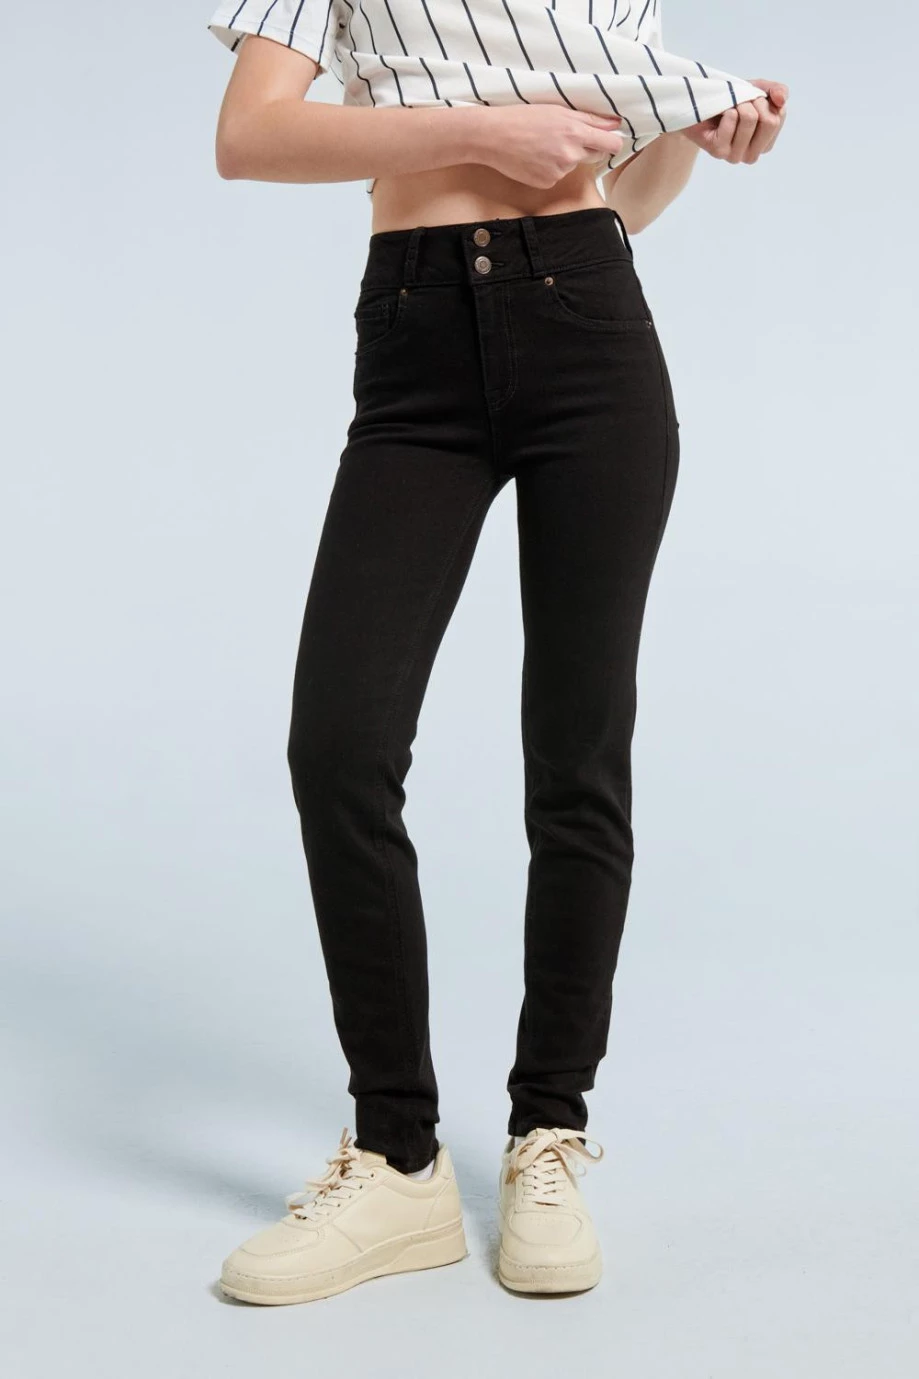 Jean negro con efecto push up, tiro alto y cintura ancha